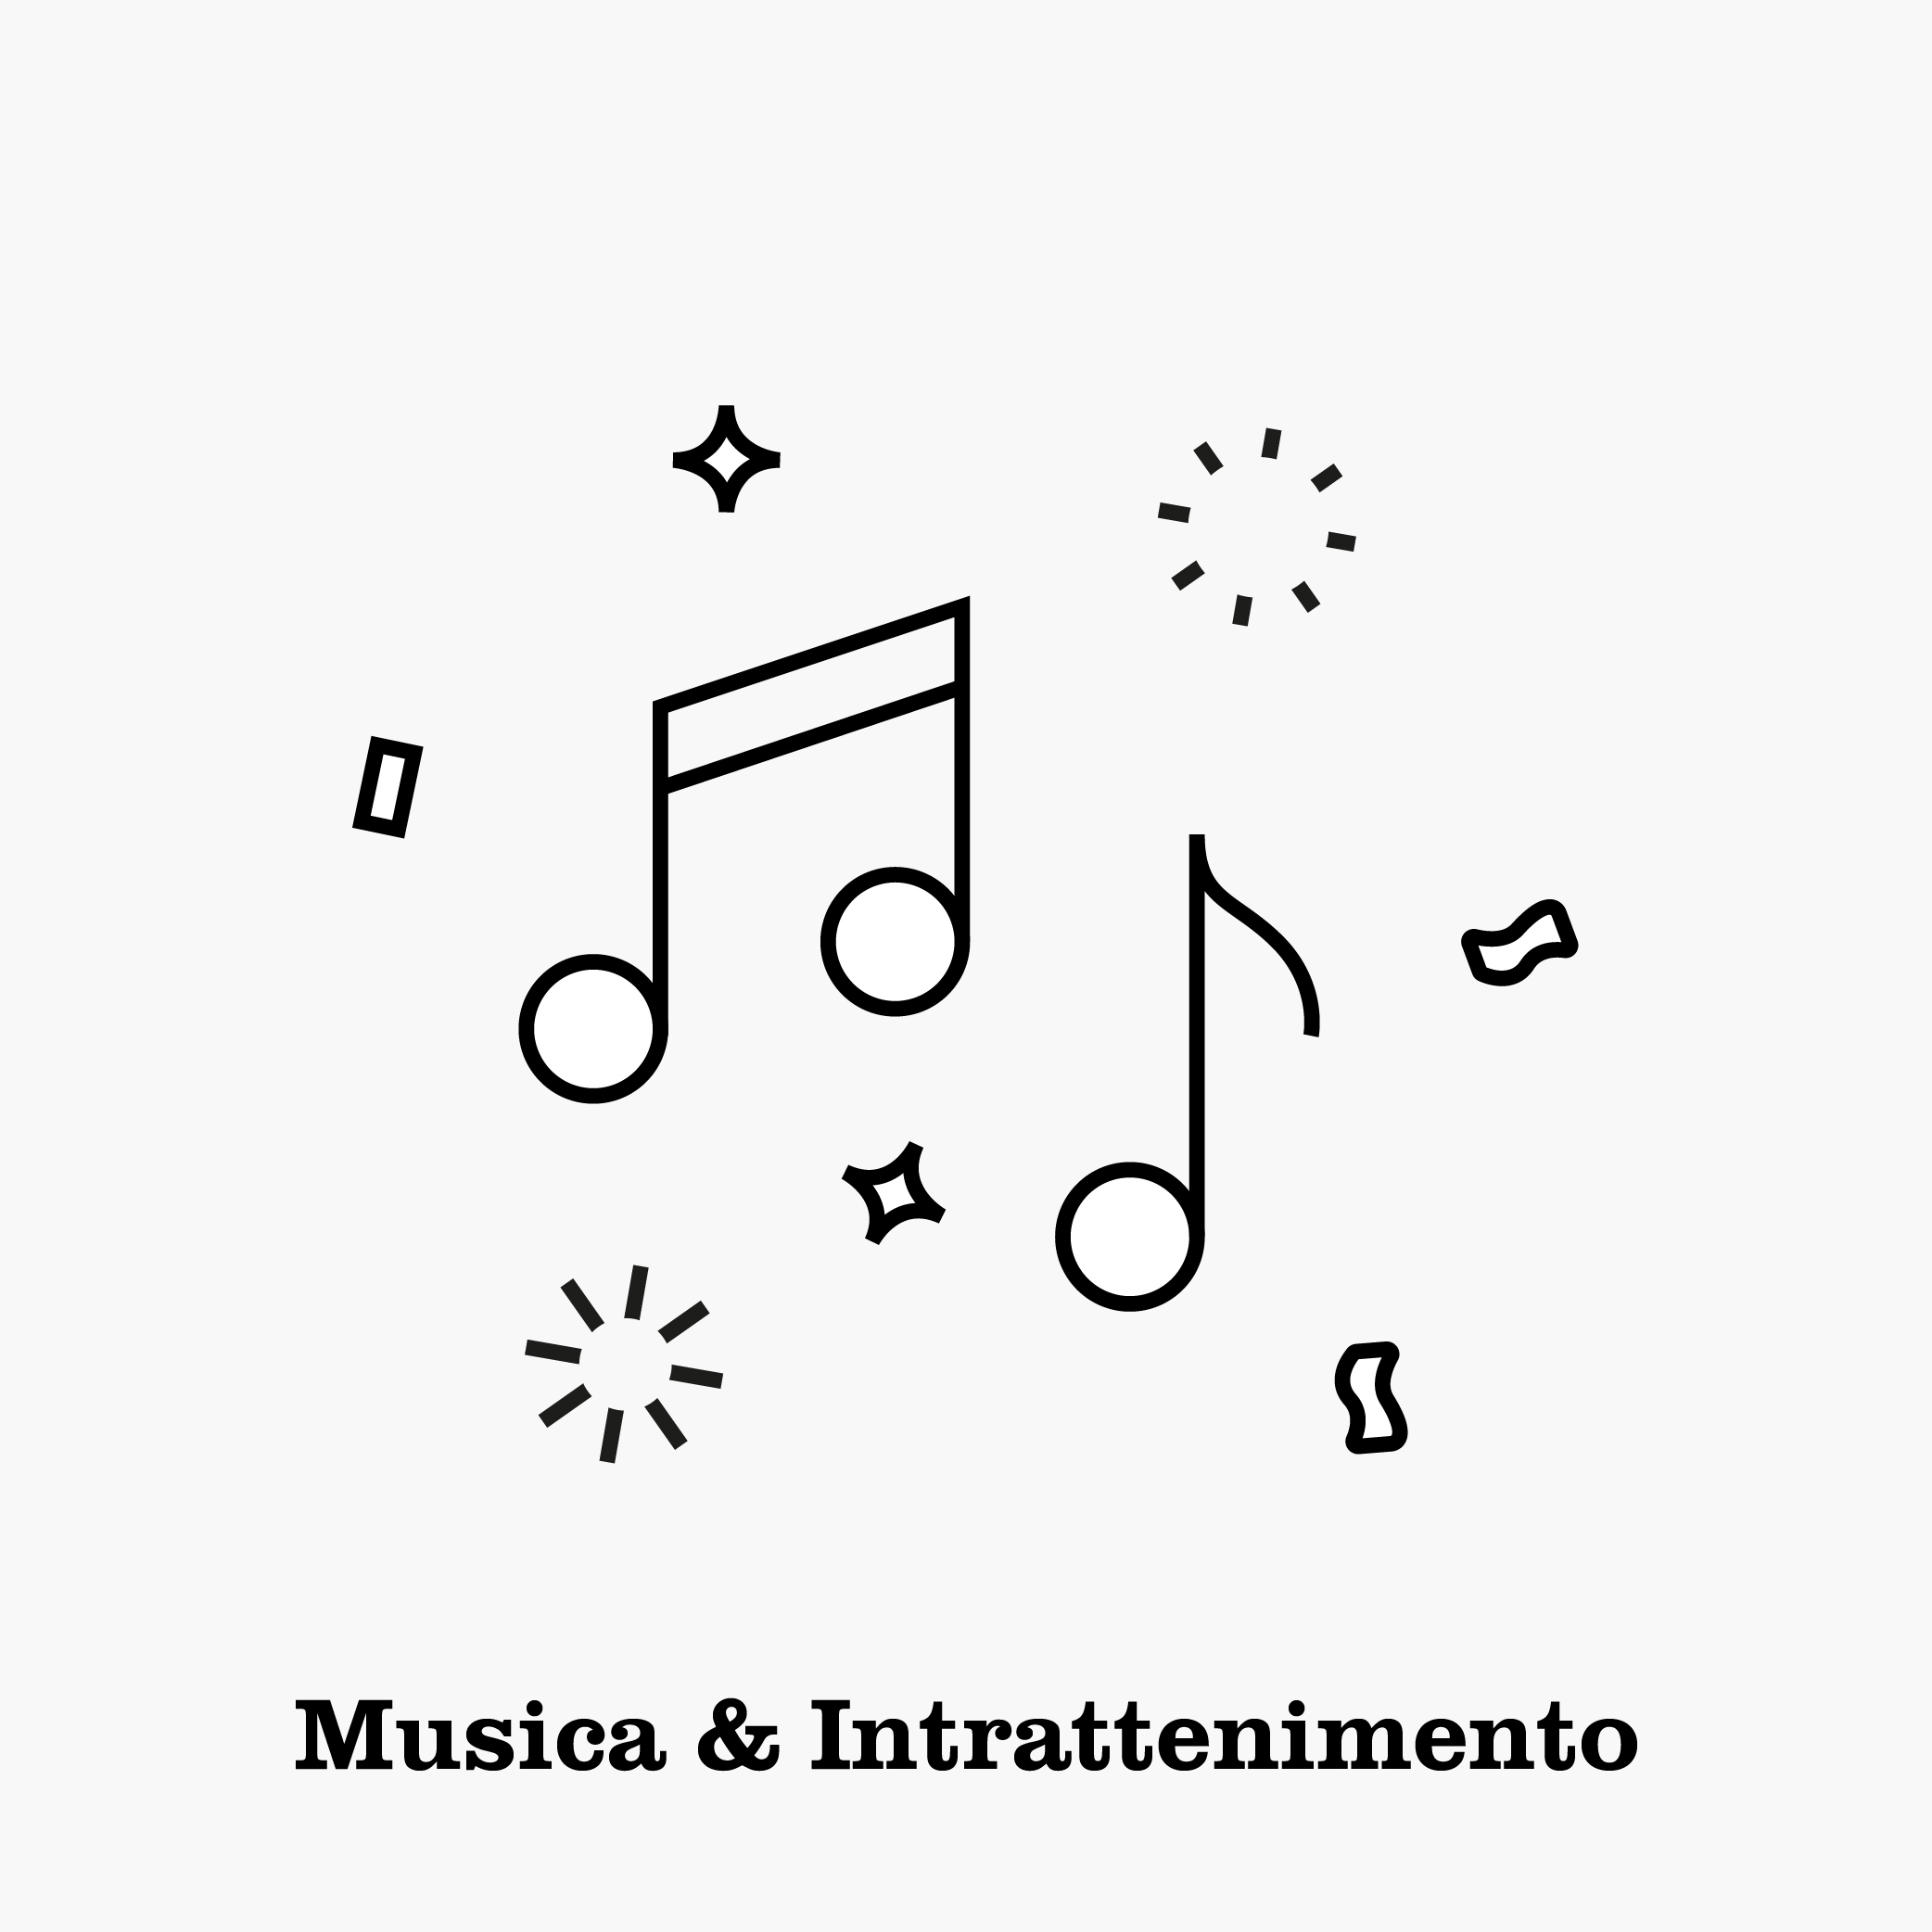 Musica & Intrattenimento